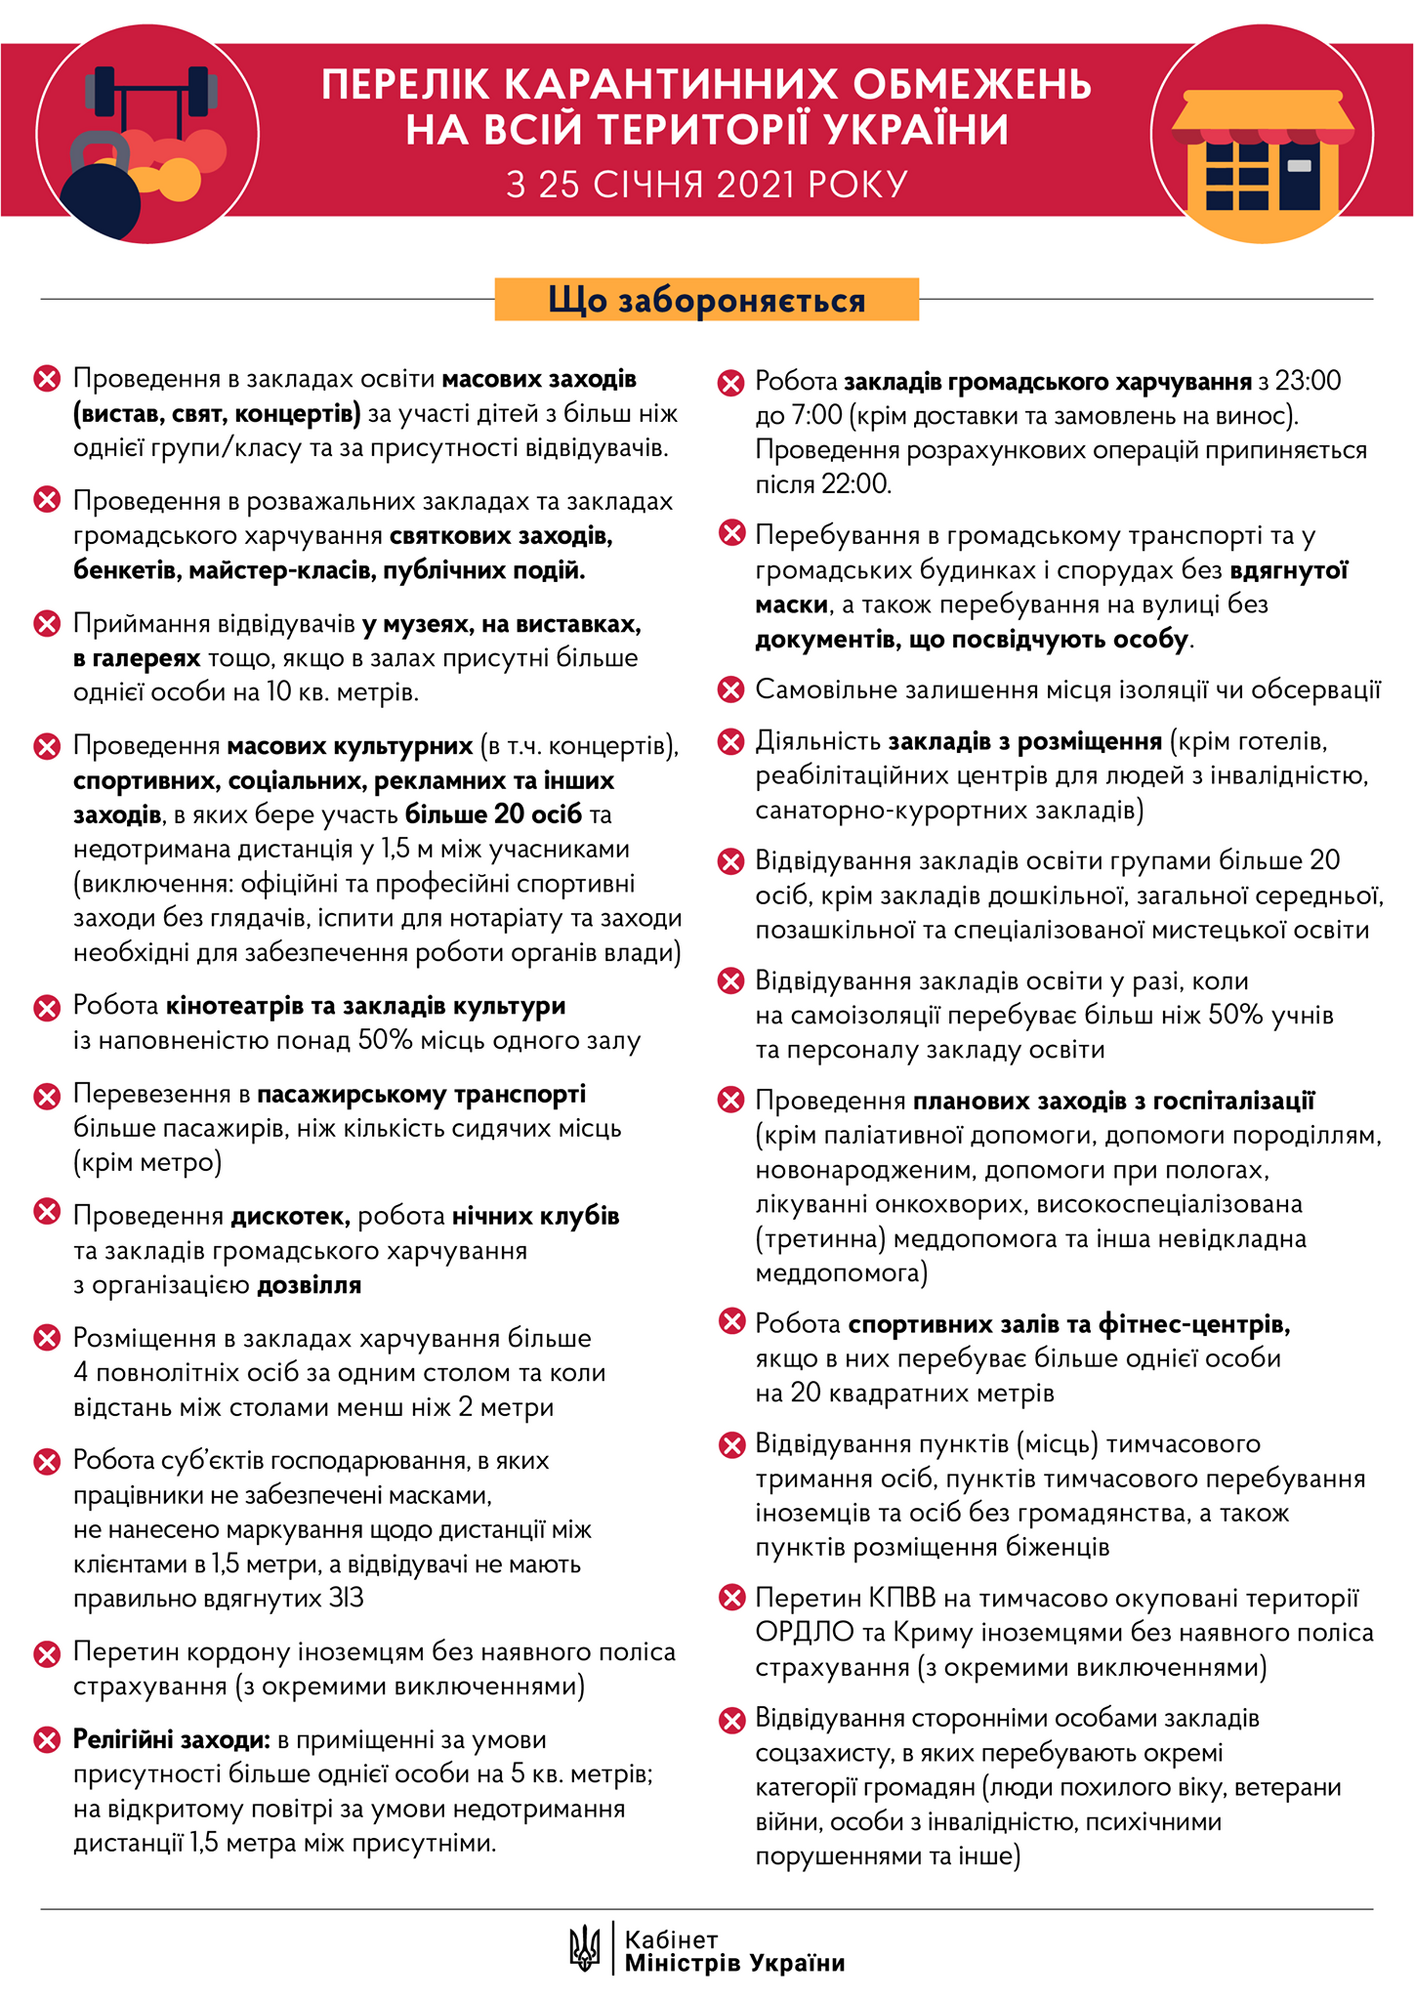 Карантин в Украине: что запрещено с 25 января